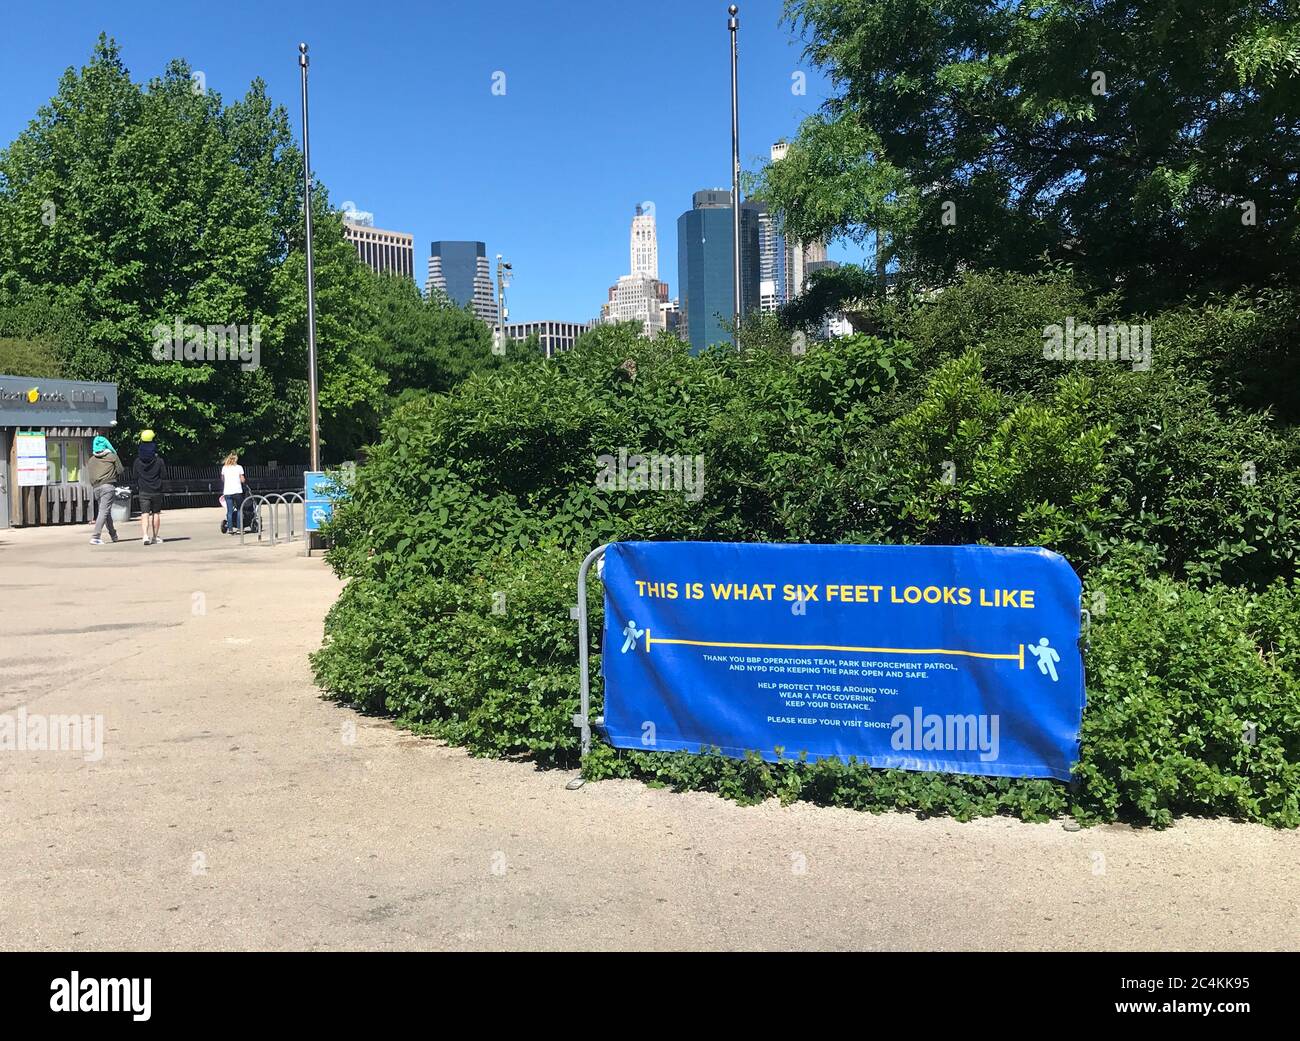 Signo de distanciamiento social en el Parque del Puente de Brooklyn que recuerda a la gente a mantener seis pies separados para prevenir la propagación del Coronavirus / COVID-19 Foto de stock